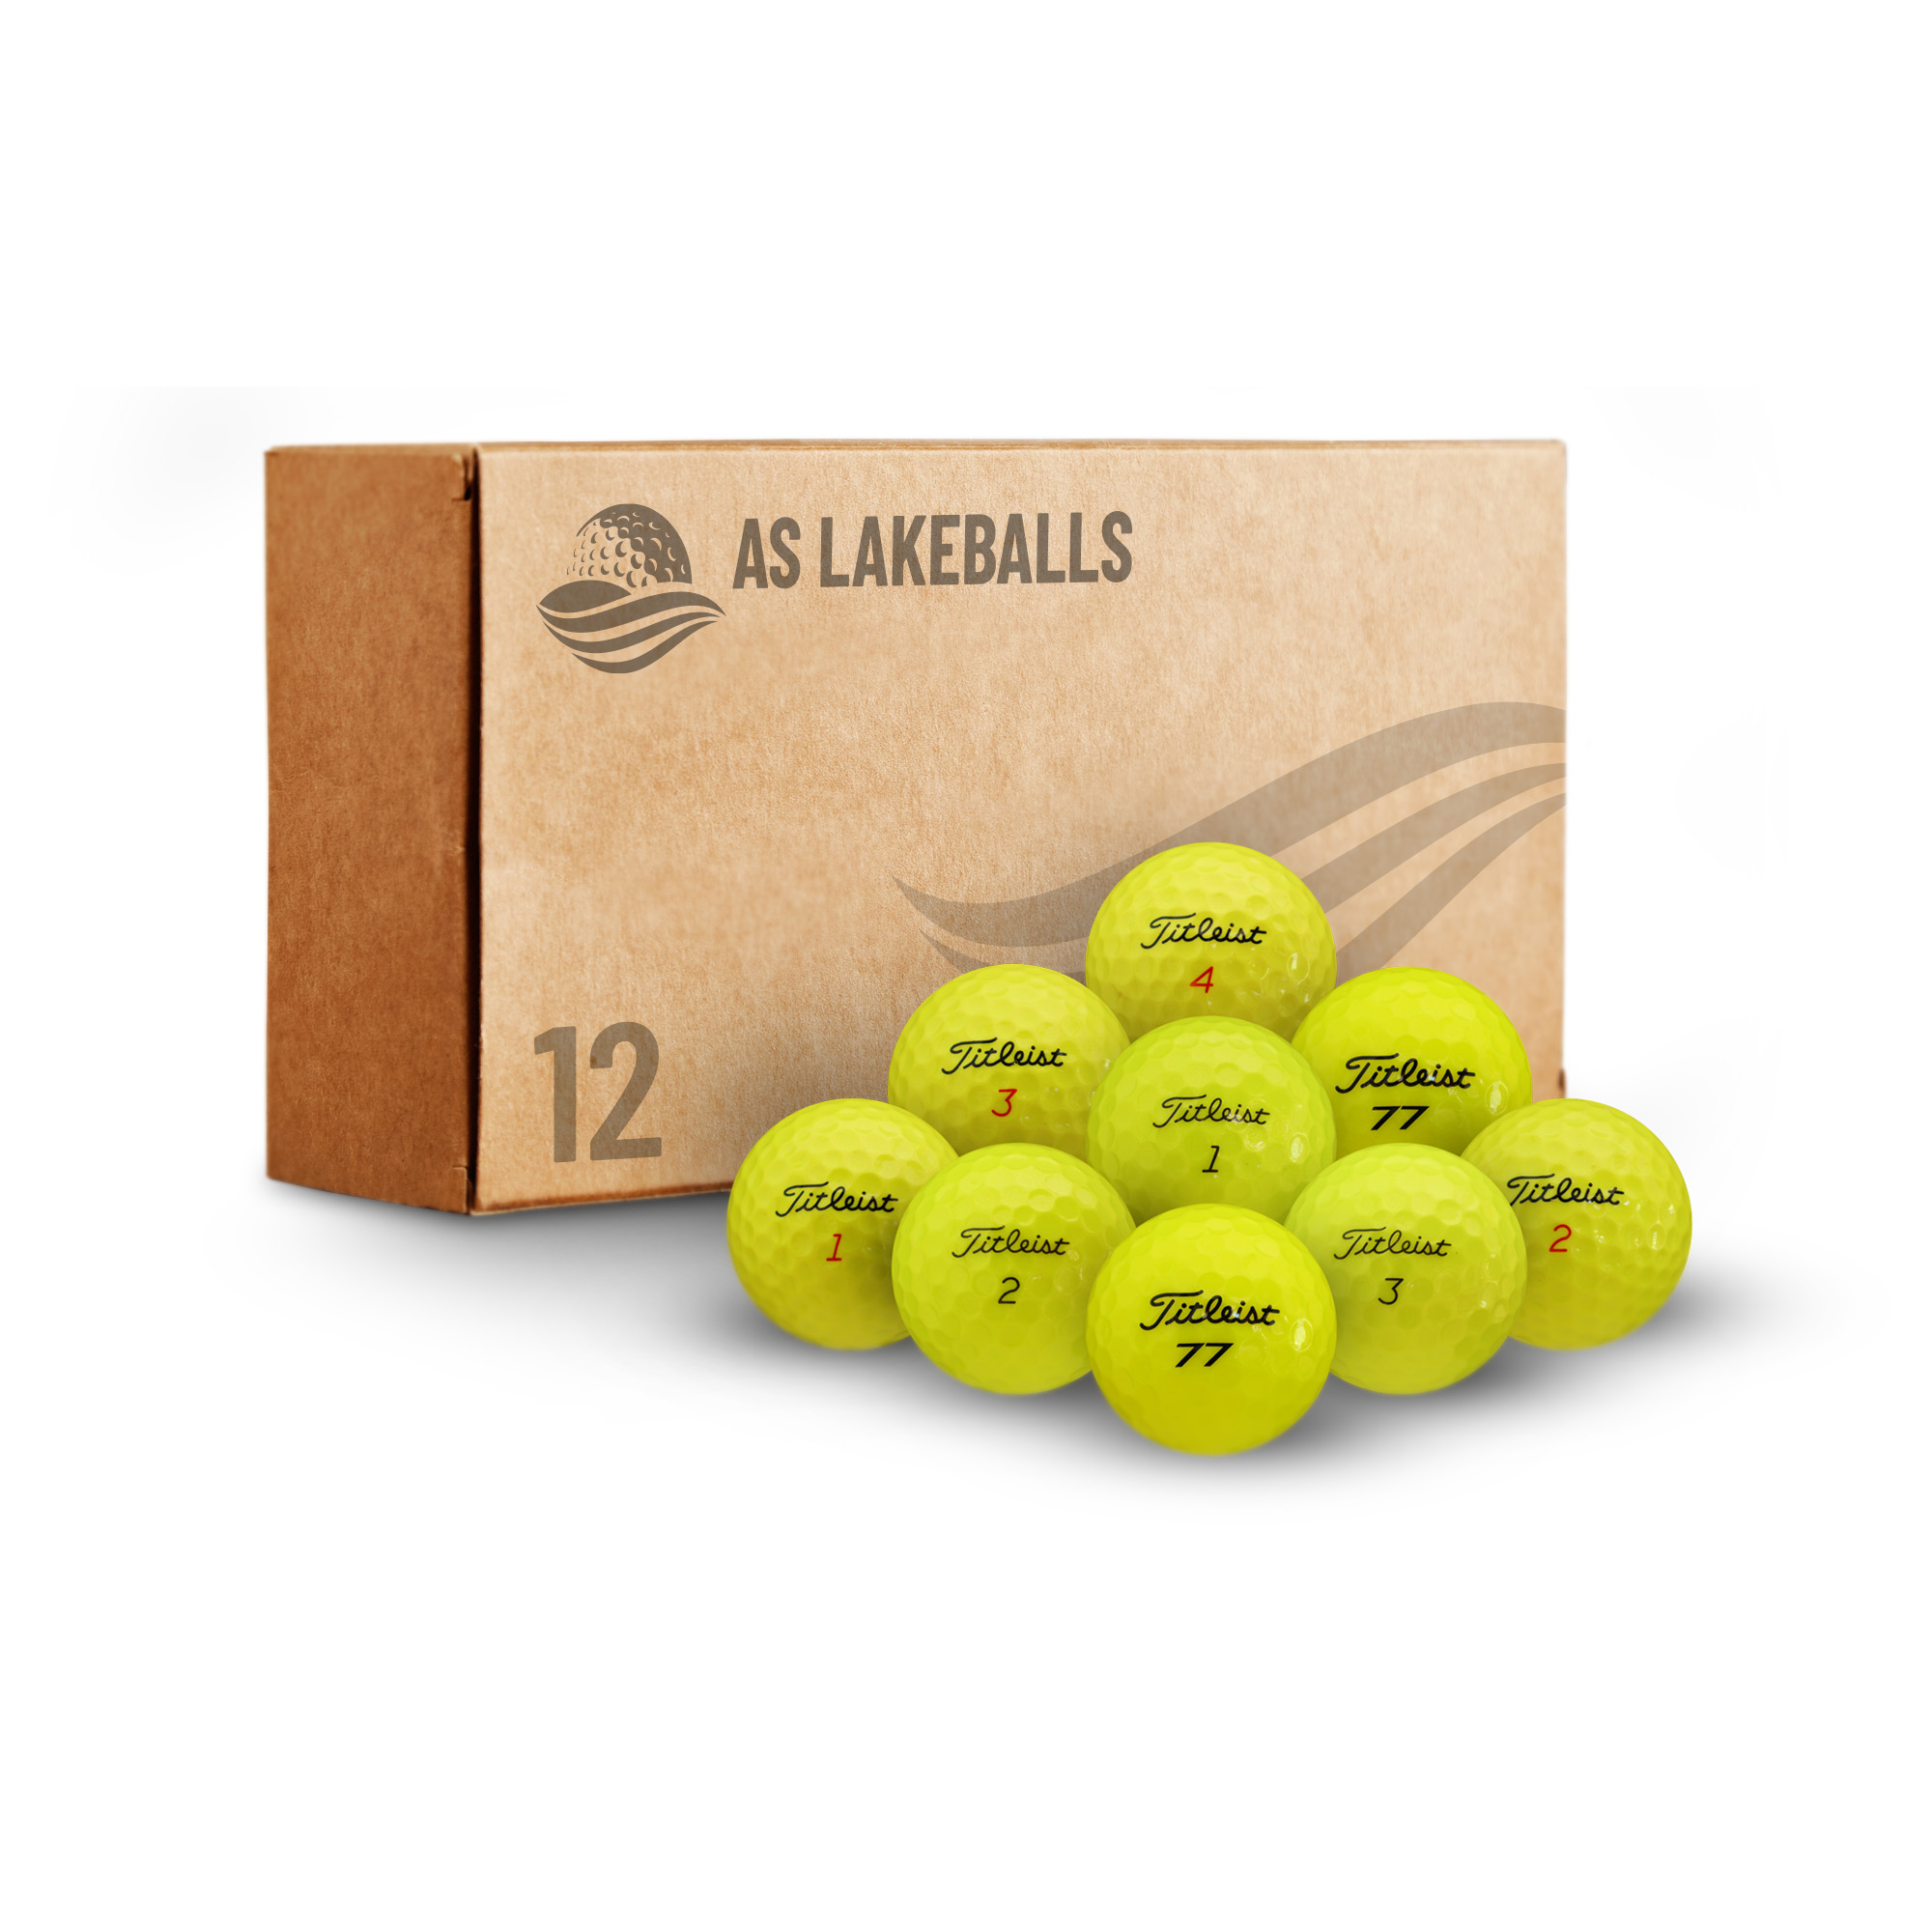 12 Stück Titleist Mix Gelb AA-AAA Lakeballs bei AS Lakeballs günstig kaufen